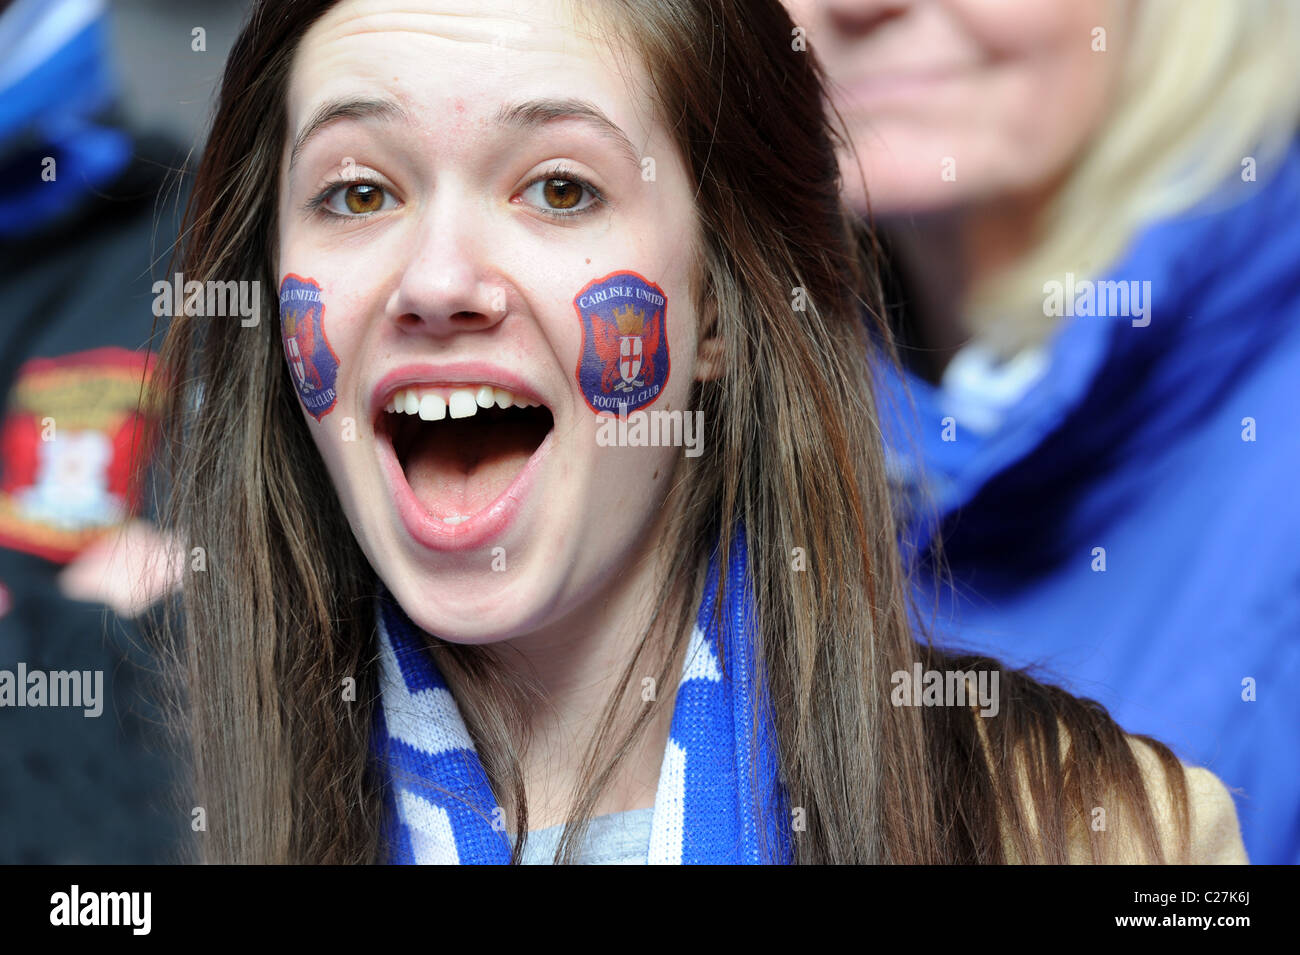 Fútbol Femenino atractivo partidario vistiendo Carlisle United Club transferencias insignia en su cara Foto de stock